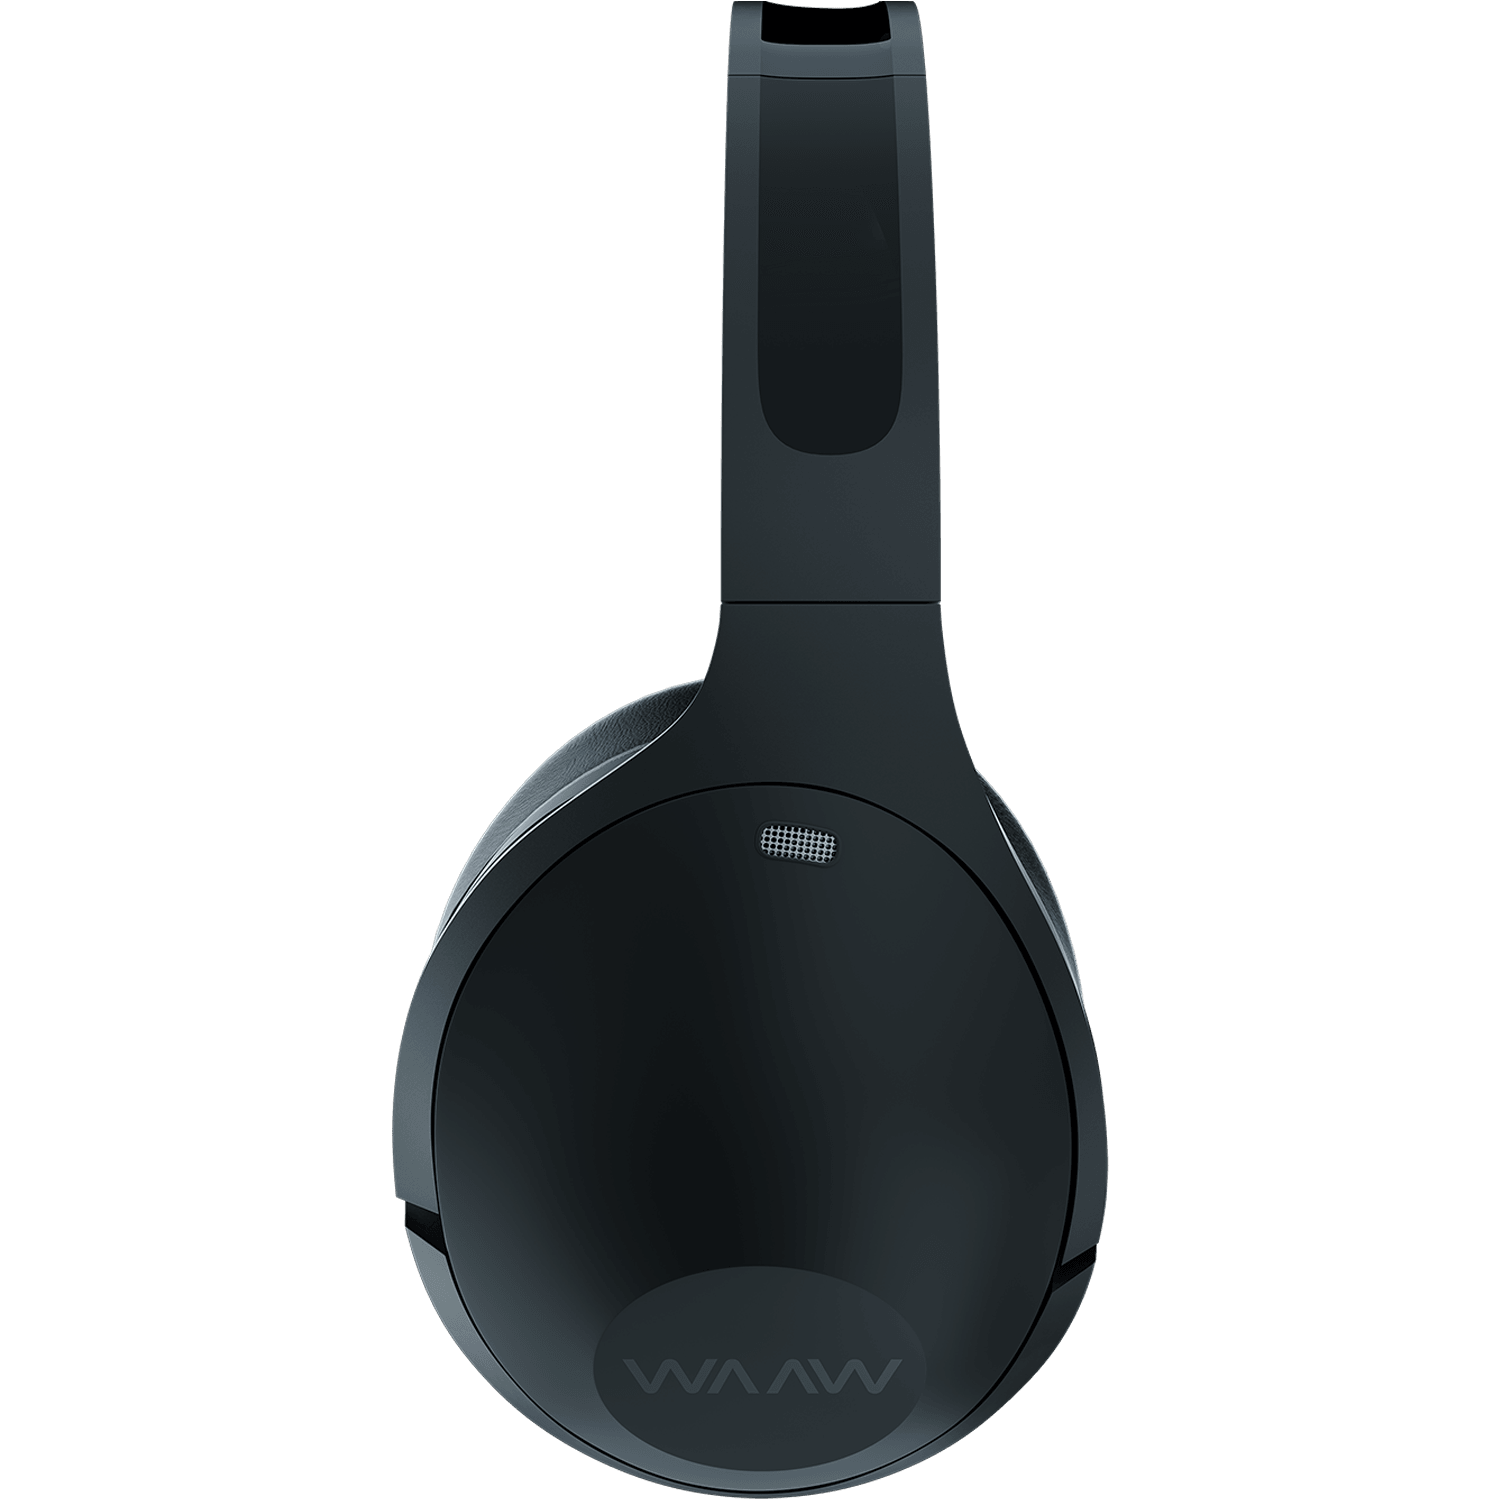 WAAW SENSE 300HBNC Headphone com Cancelamento de Ruídos - detalhes do fone over ear